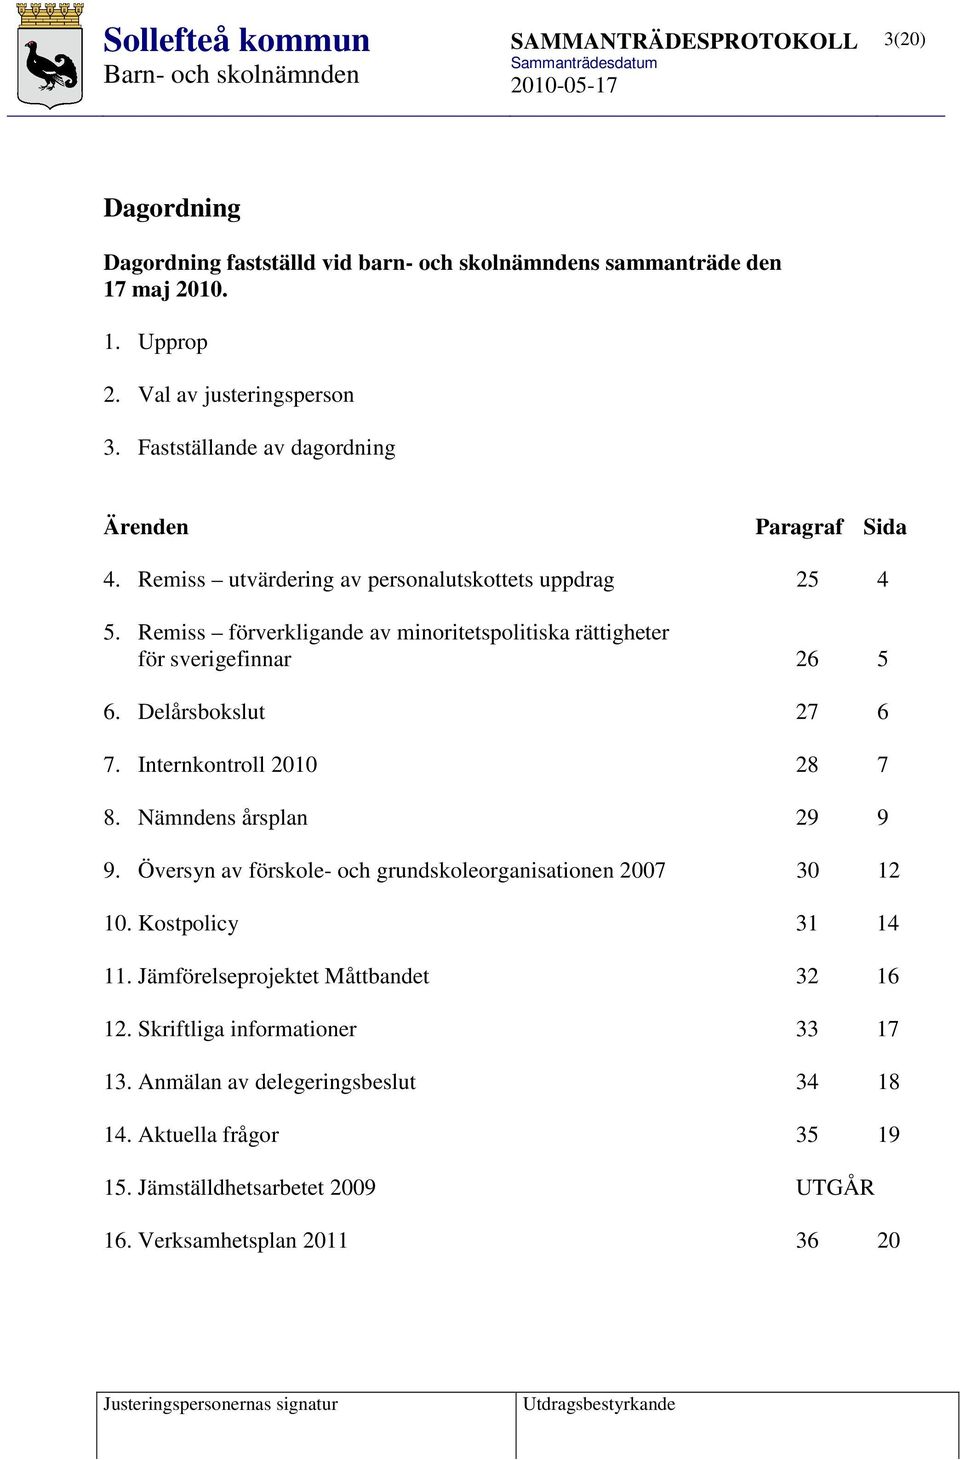 Remiss förverkligande av minoritetspolitiska rättigheter för sverigefinnar 26 5 6. Delårsbokslut 27 6 7. Internkontroll 2010 28 7 8. Nämndens årsplan 29 9 9.